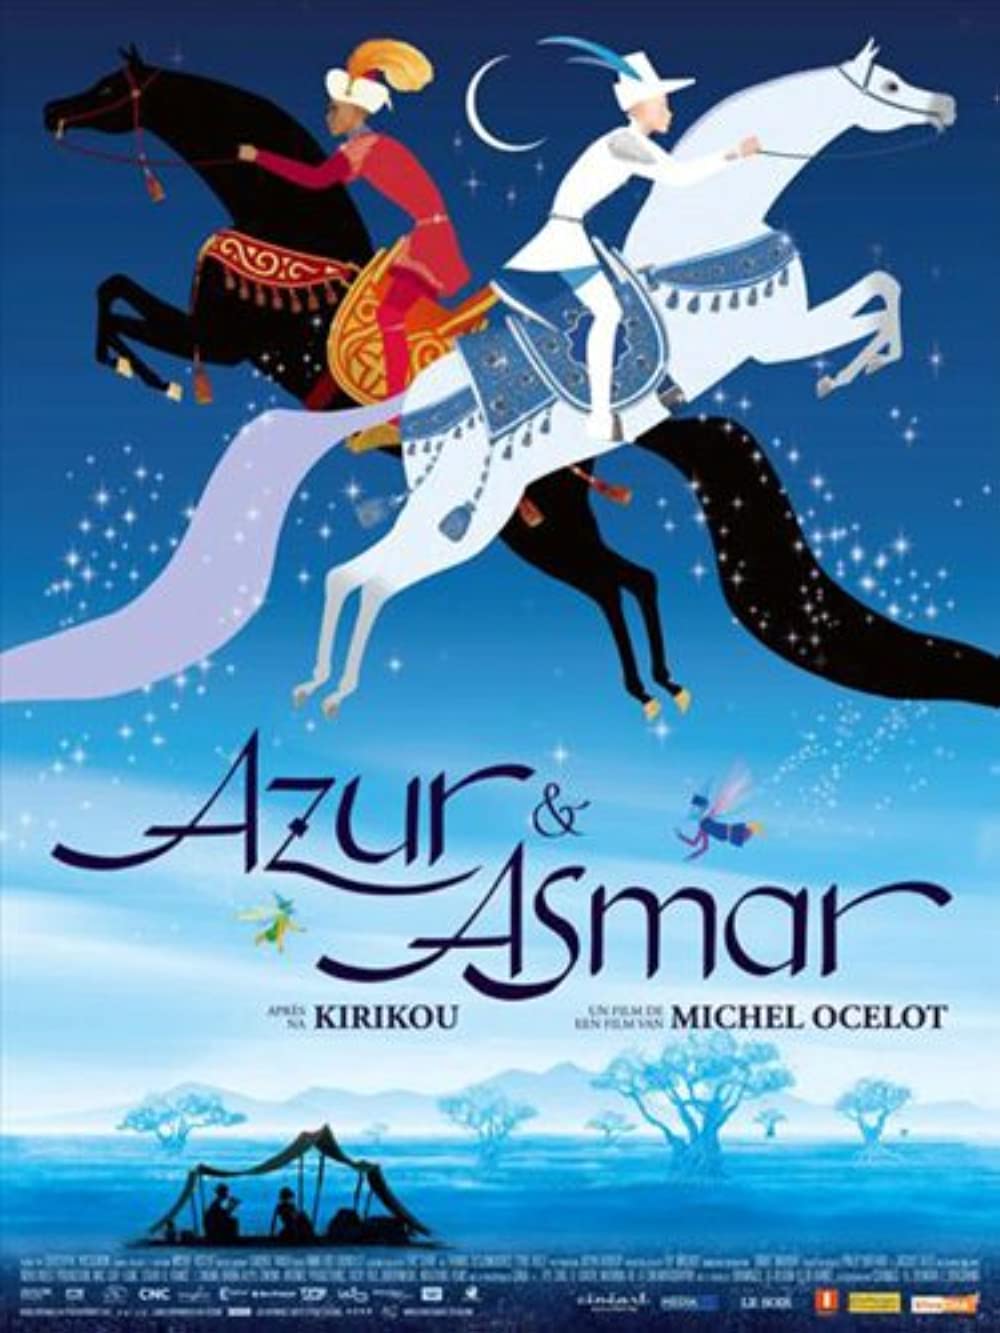 Filmbeschreibung zu Azur und Asmar